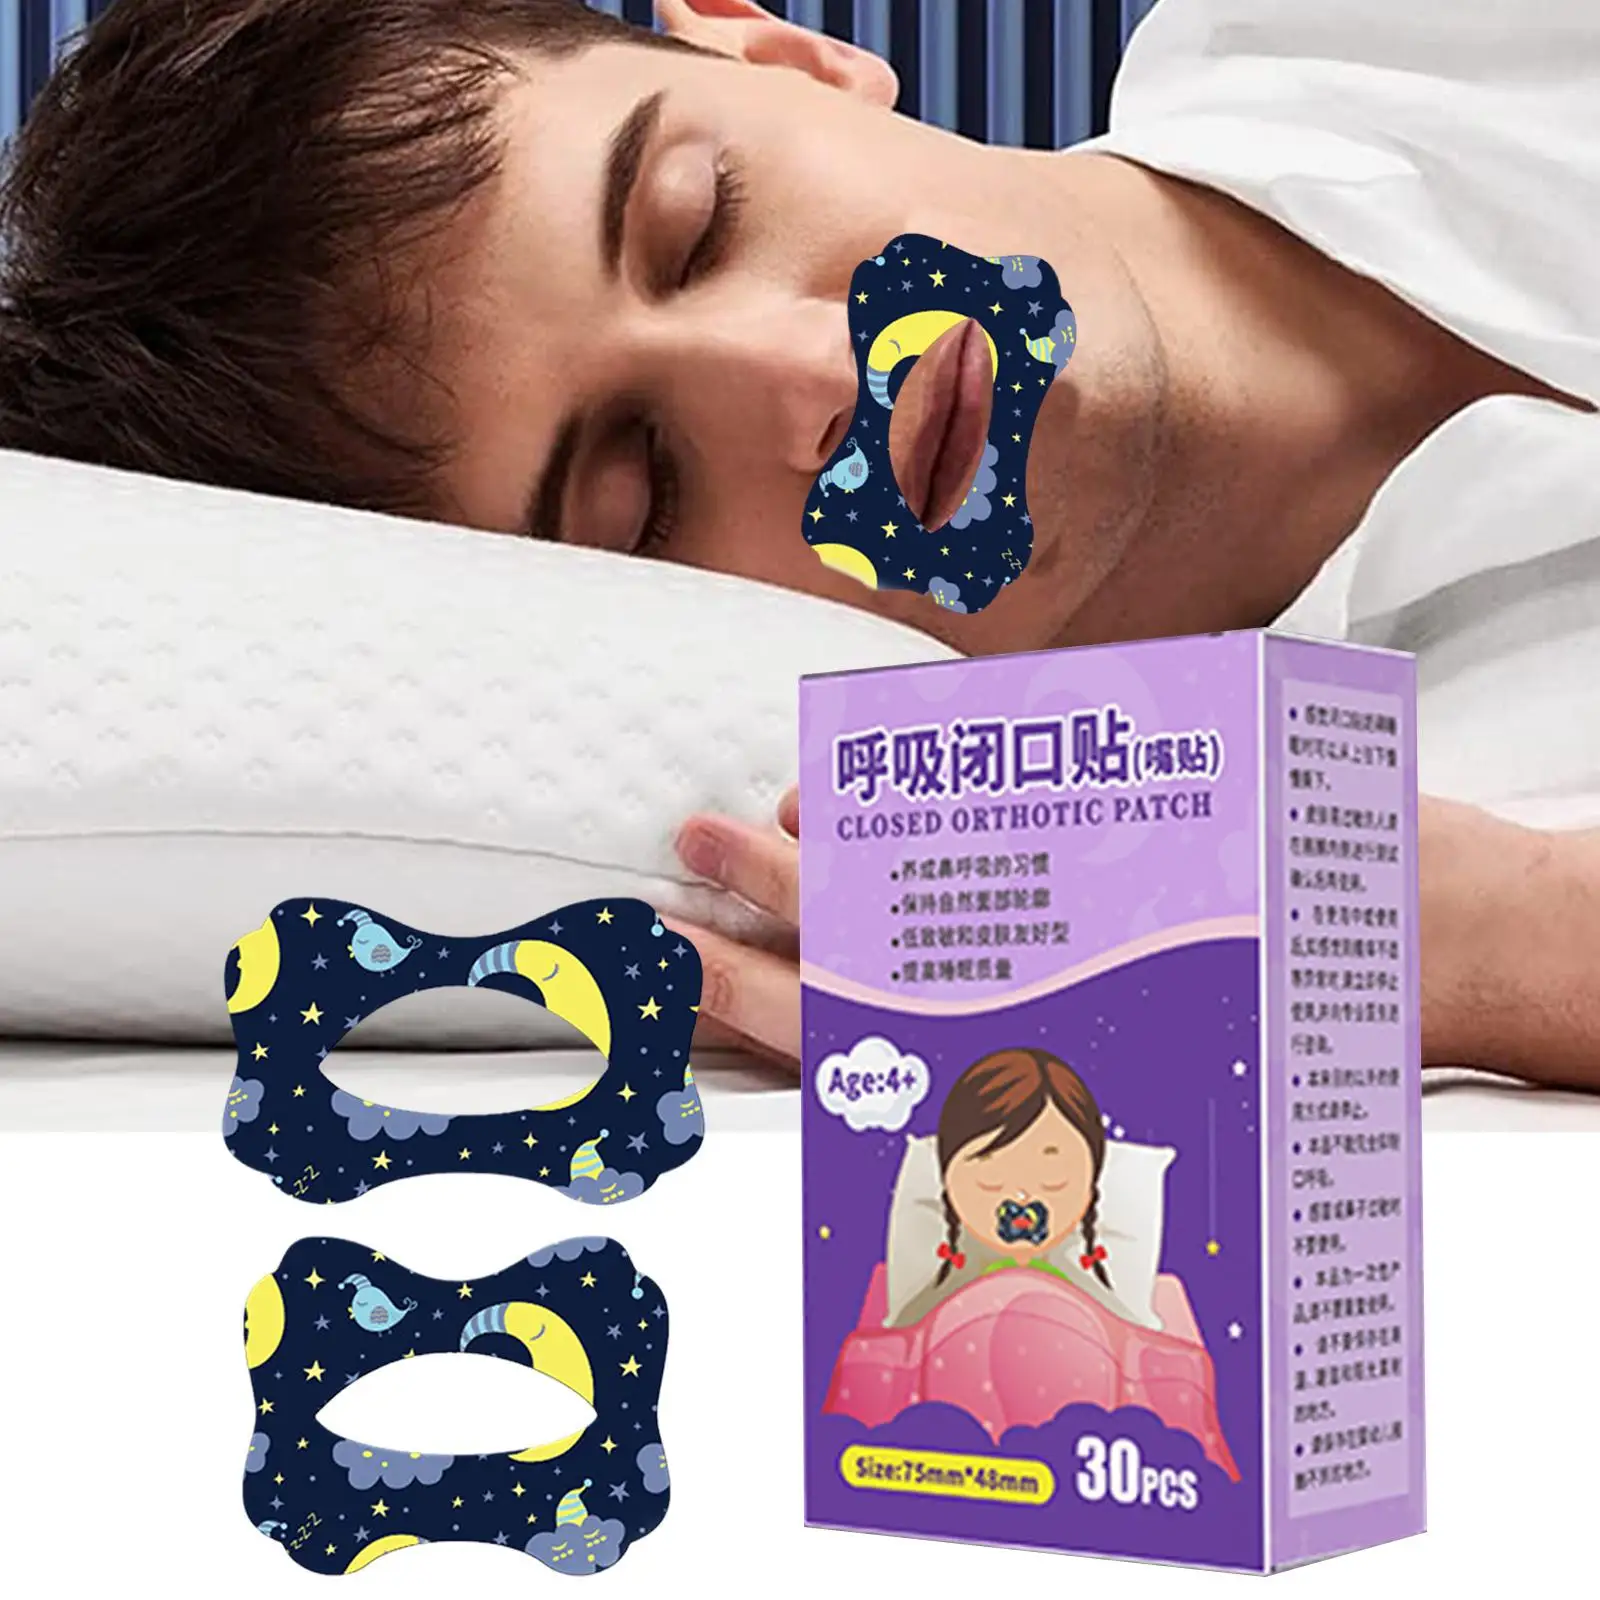 30Pcs/תיבת אנטי-נחירות מדבקות ילדים למבוגרים לישון לילה השפתיים האף נשימה לשיפור תיקון הפה תיקון אנטי-נחירות מדבקה - 4